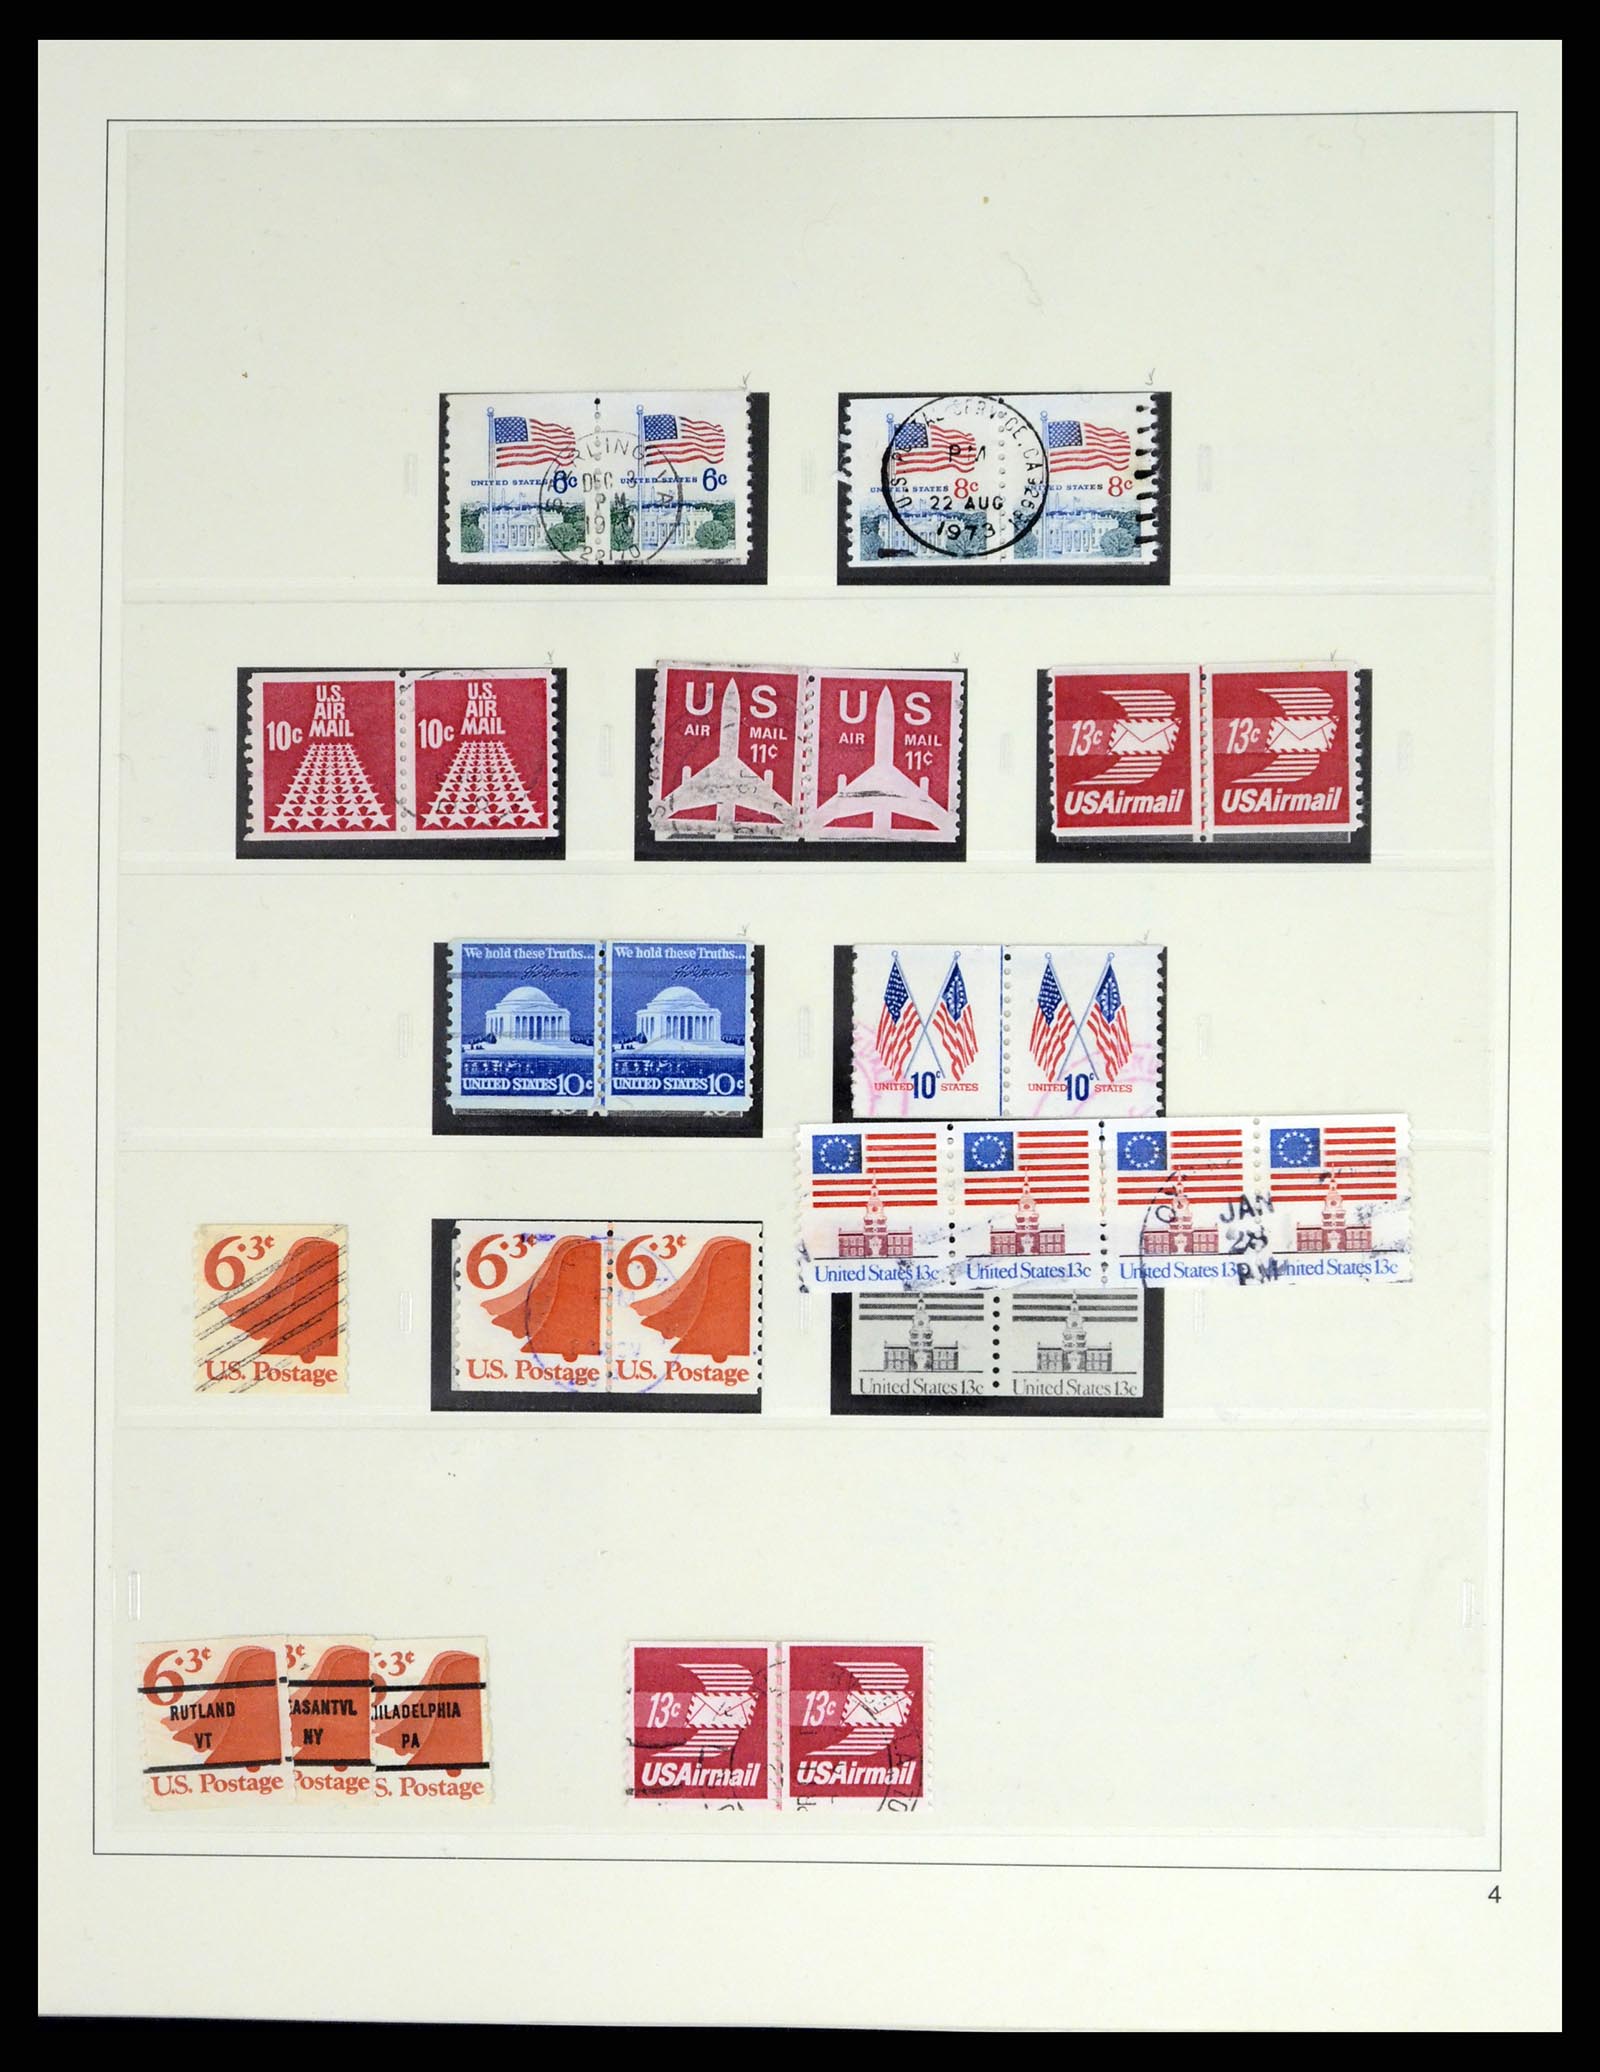 37551 220 - Stamp collection 37551 USA 1851-2001.